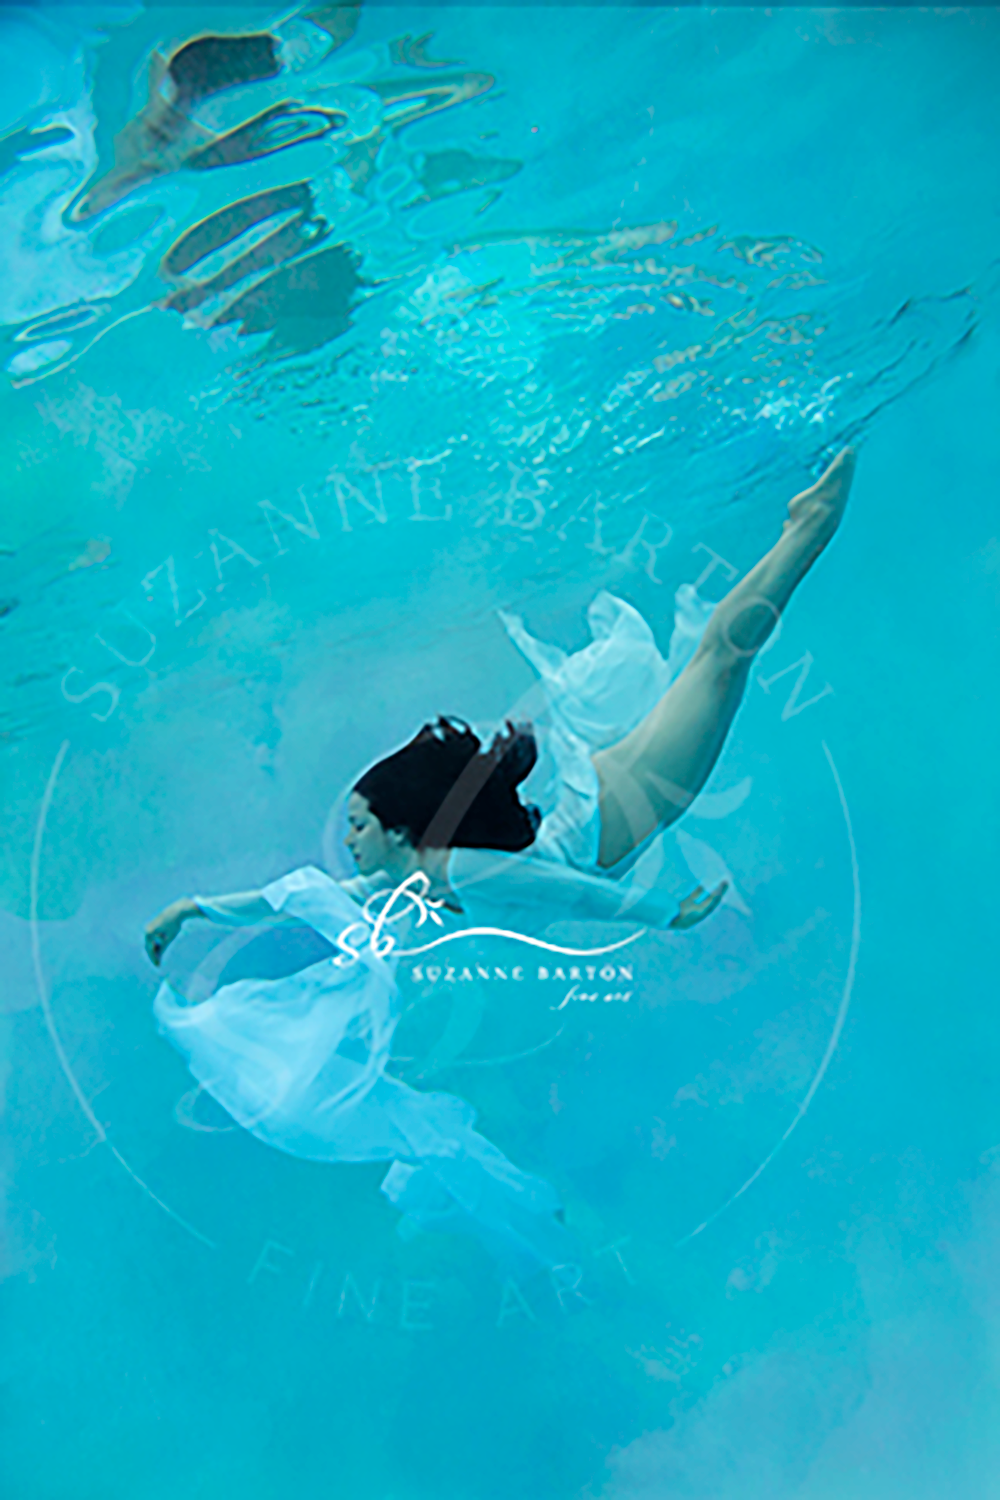 Ligia XIV - Suzanne Barton - Limited Edition